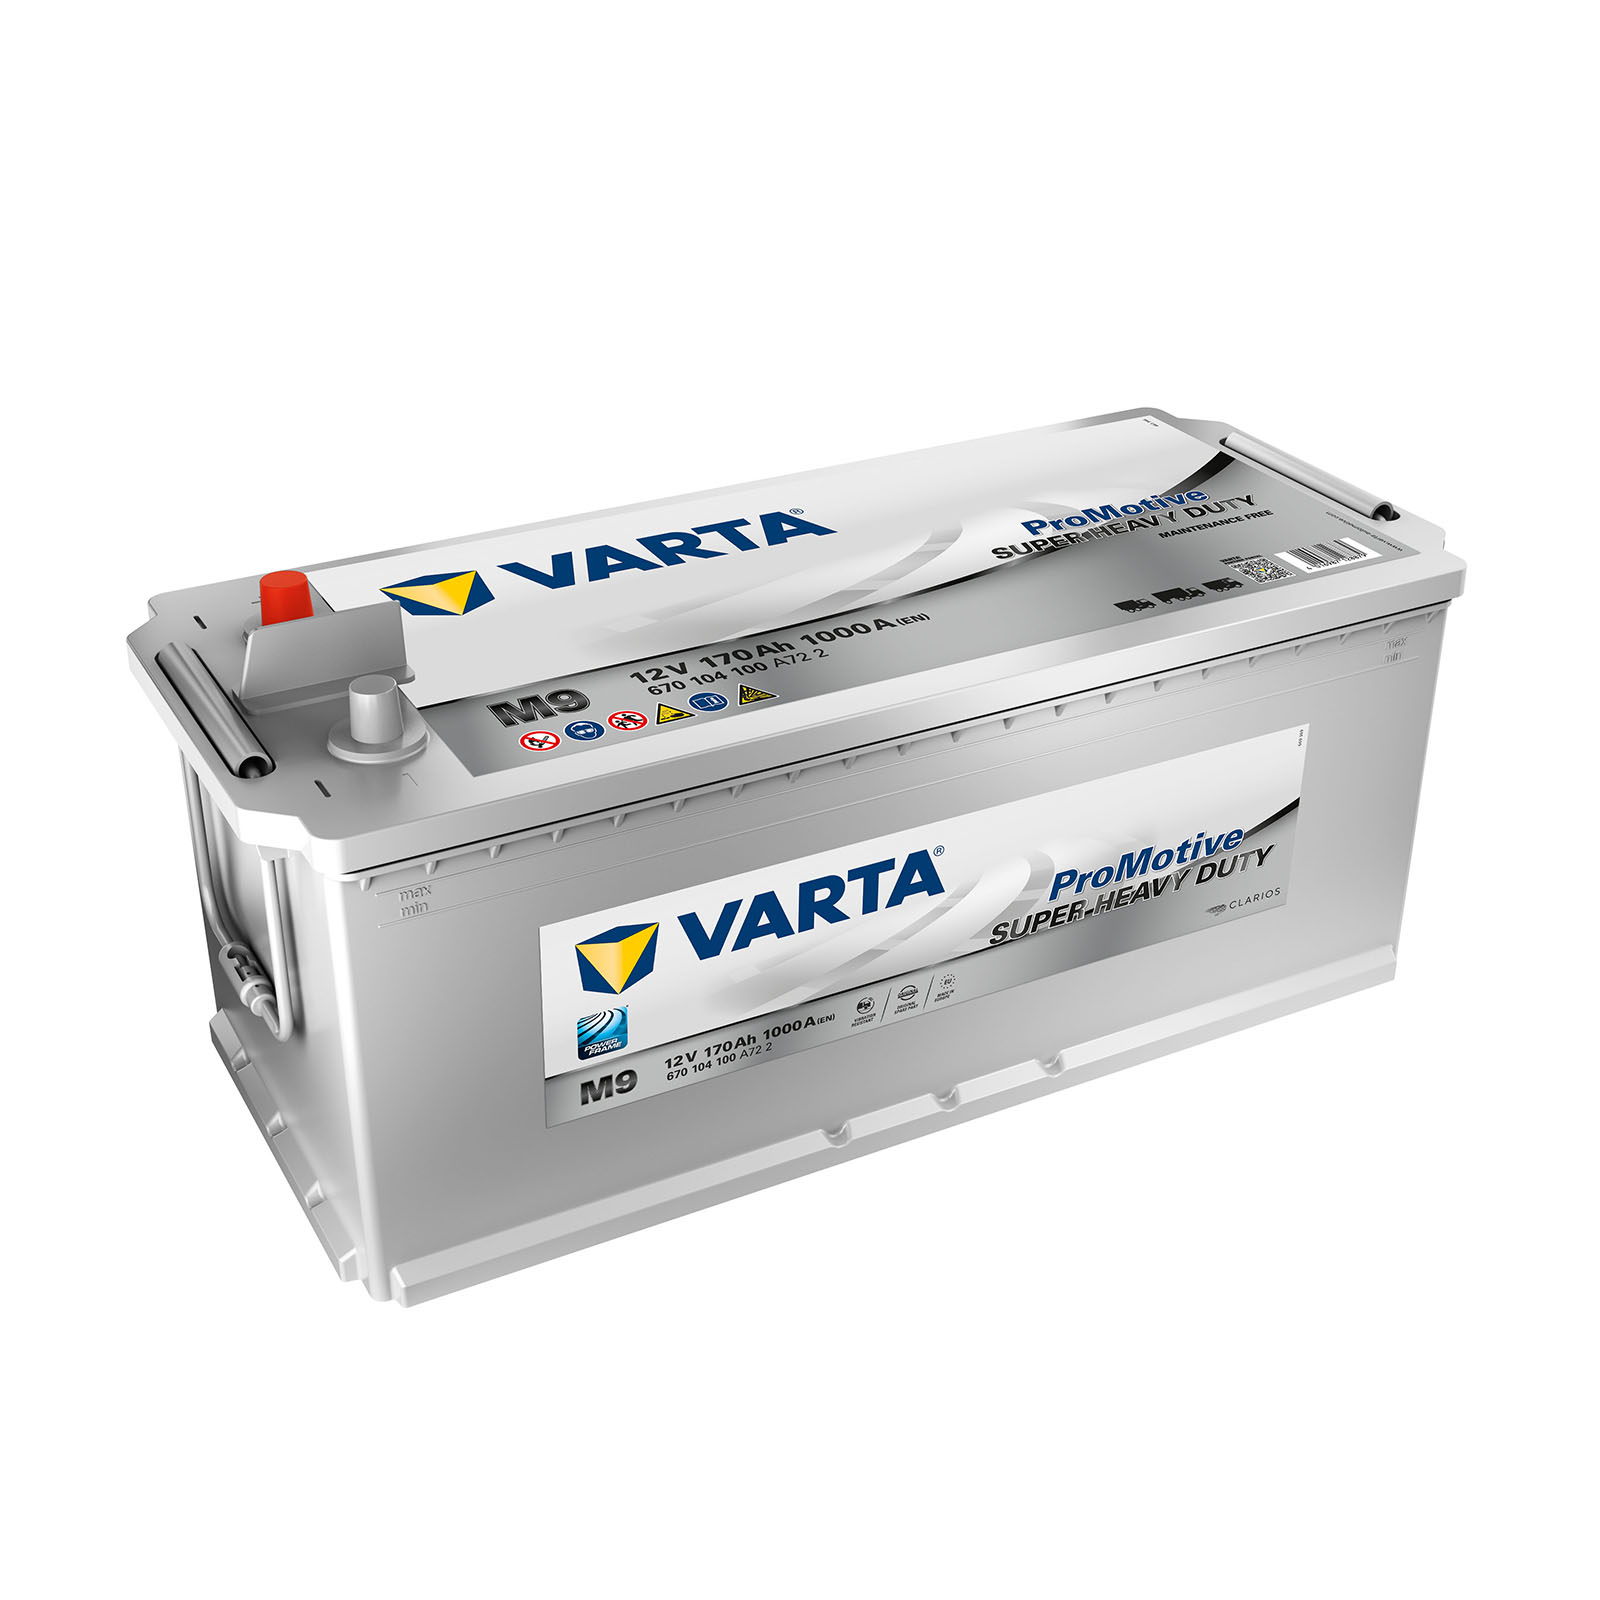 VARTA Promotive Blue 670104100A722 